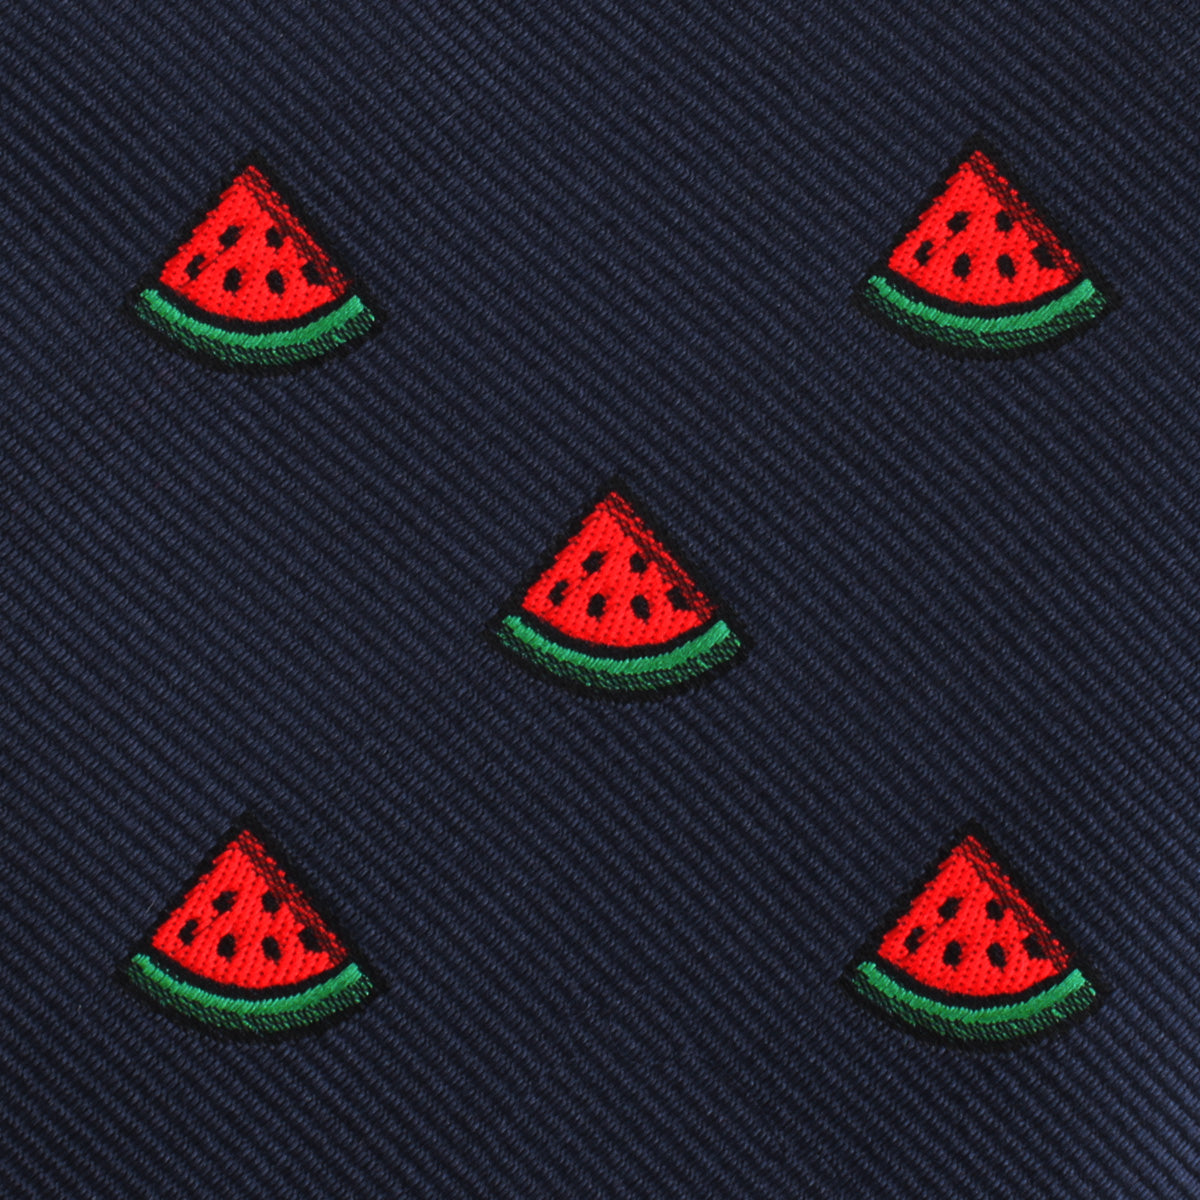 Watermelon Slice Skinny Tie Fabric